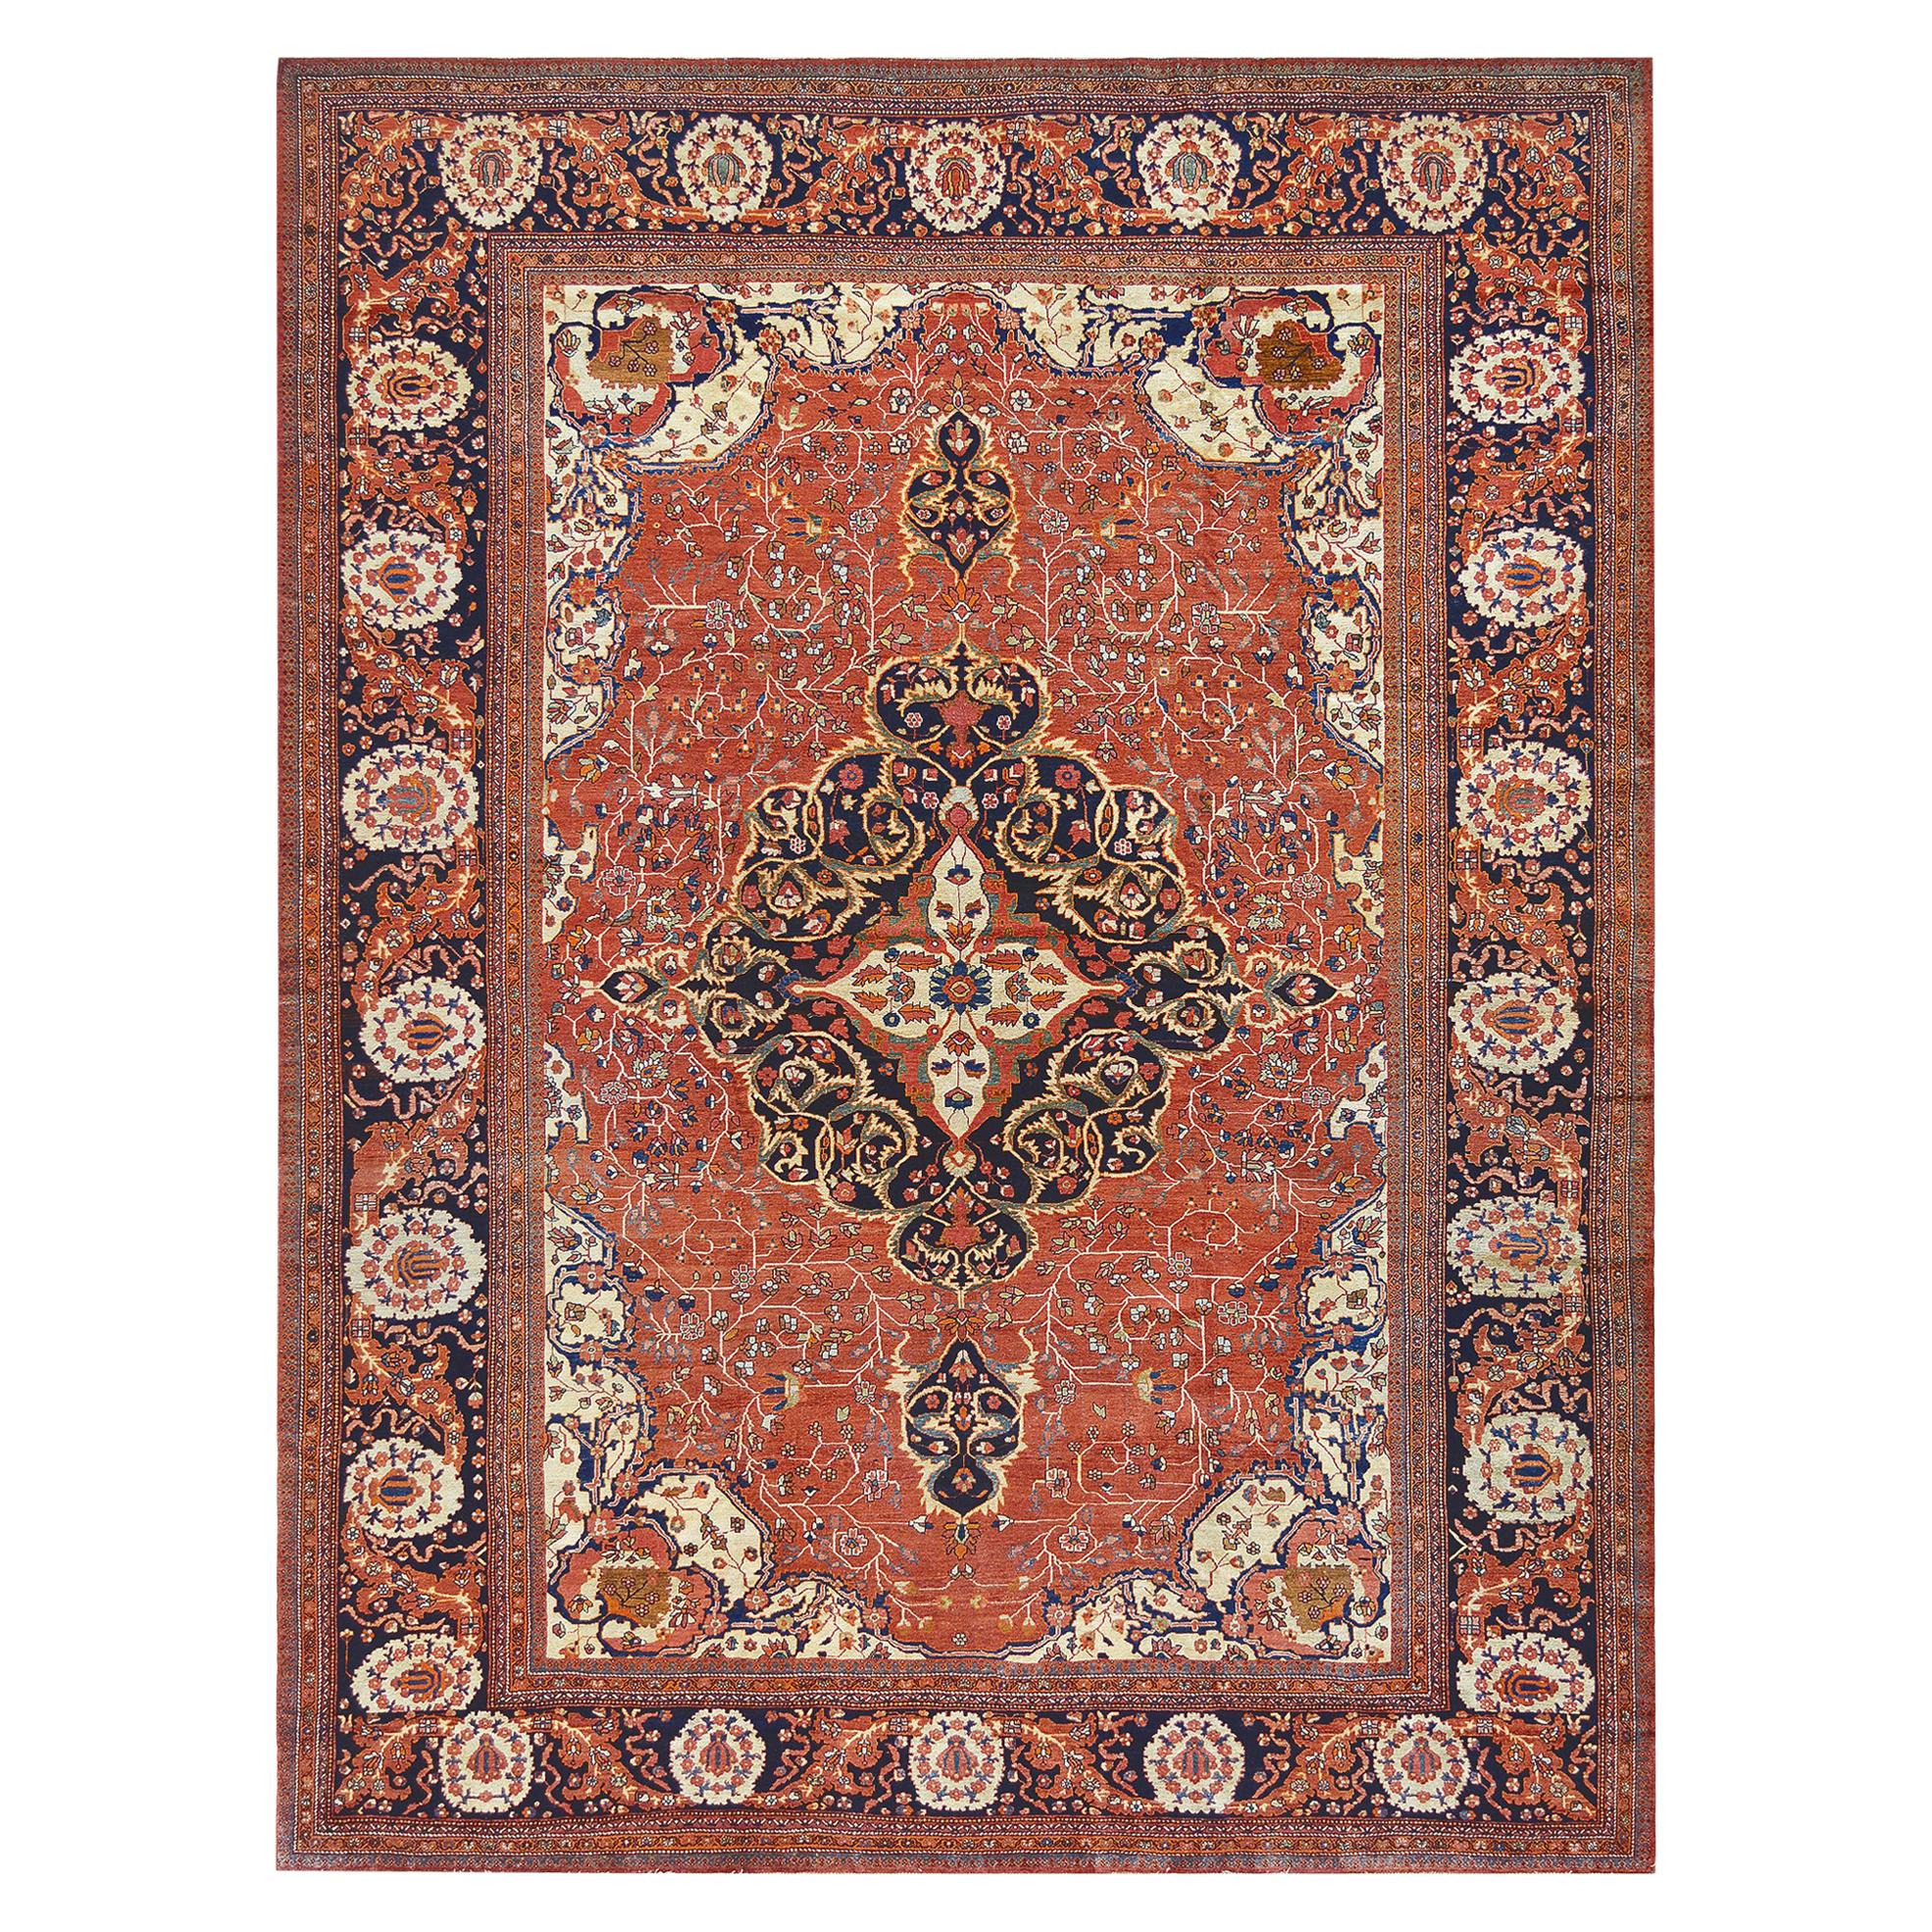 Fereghan-Teppich aus Westpersien aus dem späten 19. Jahrhundert